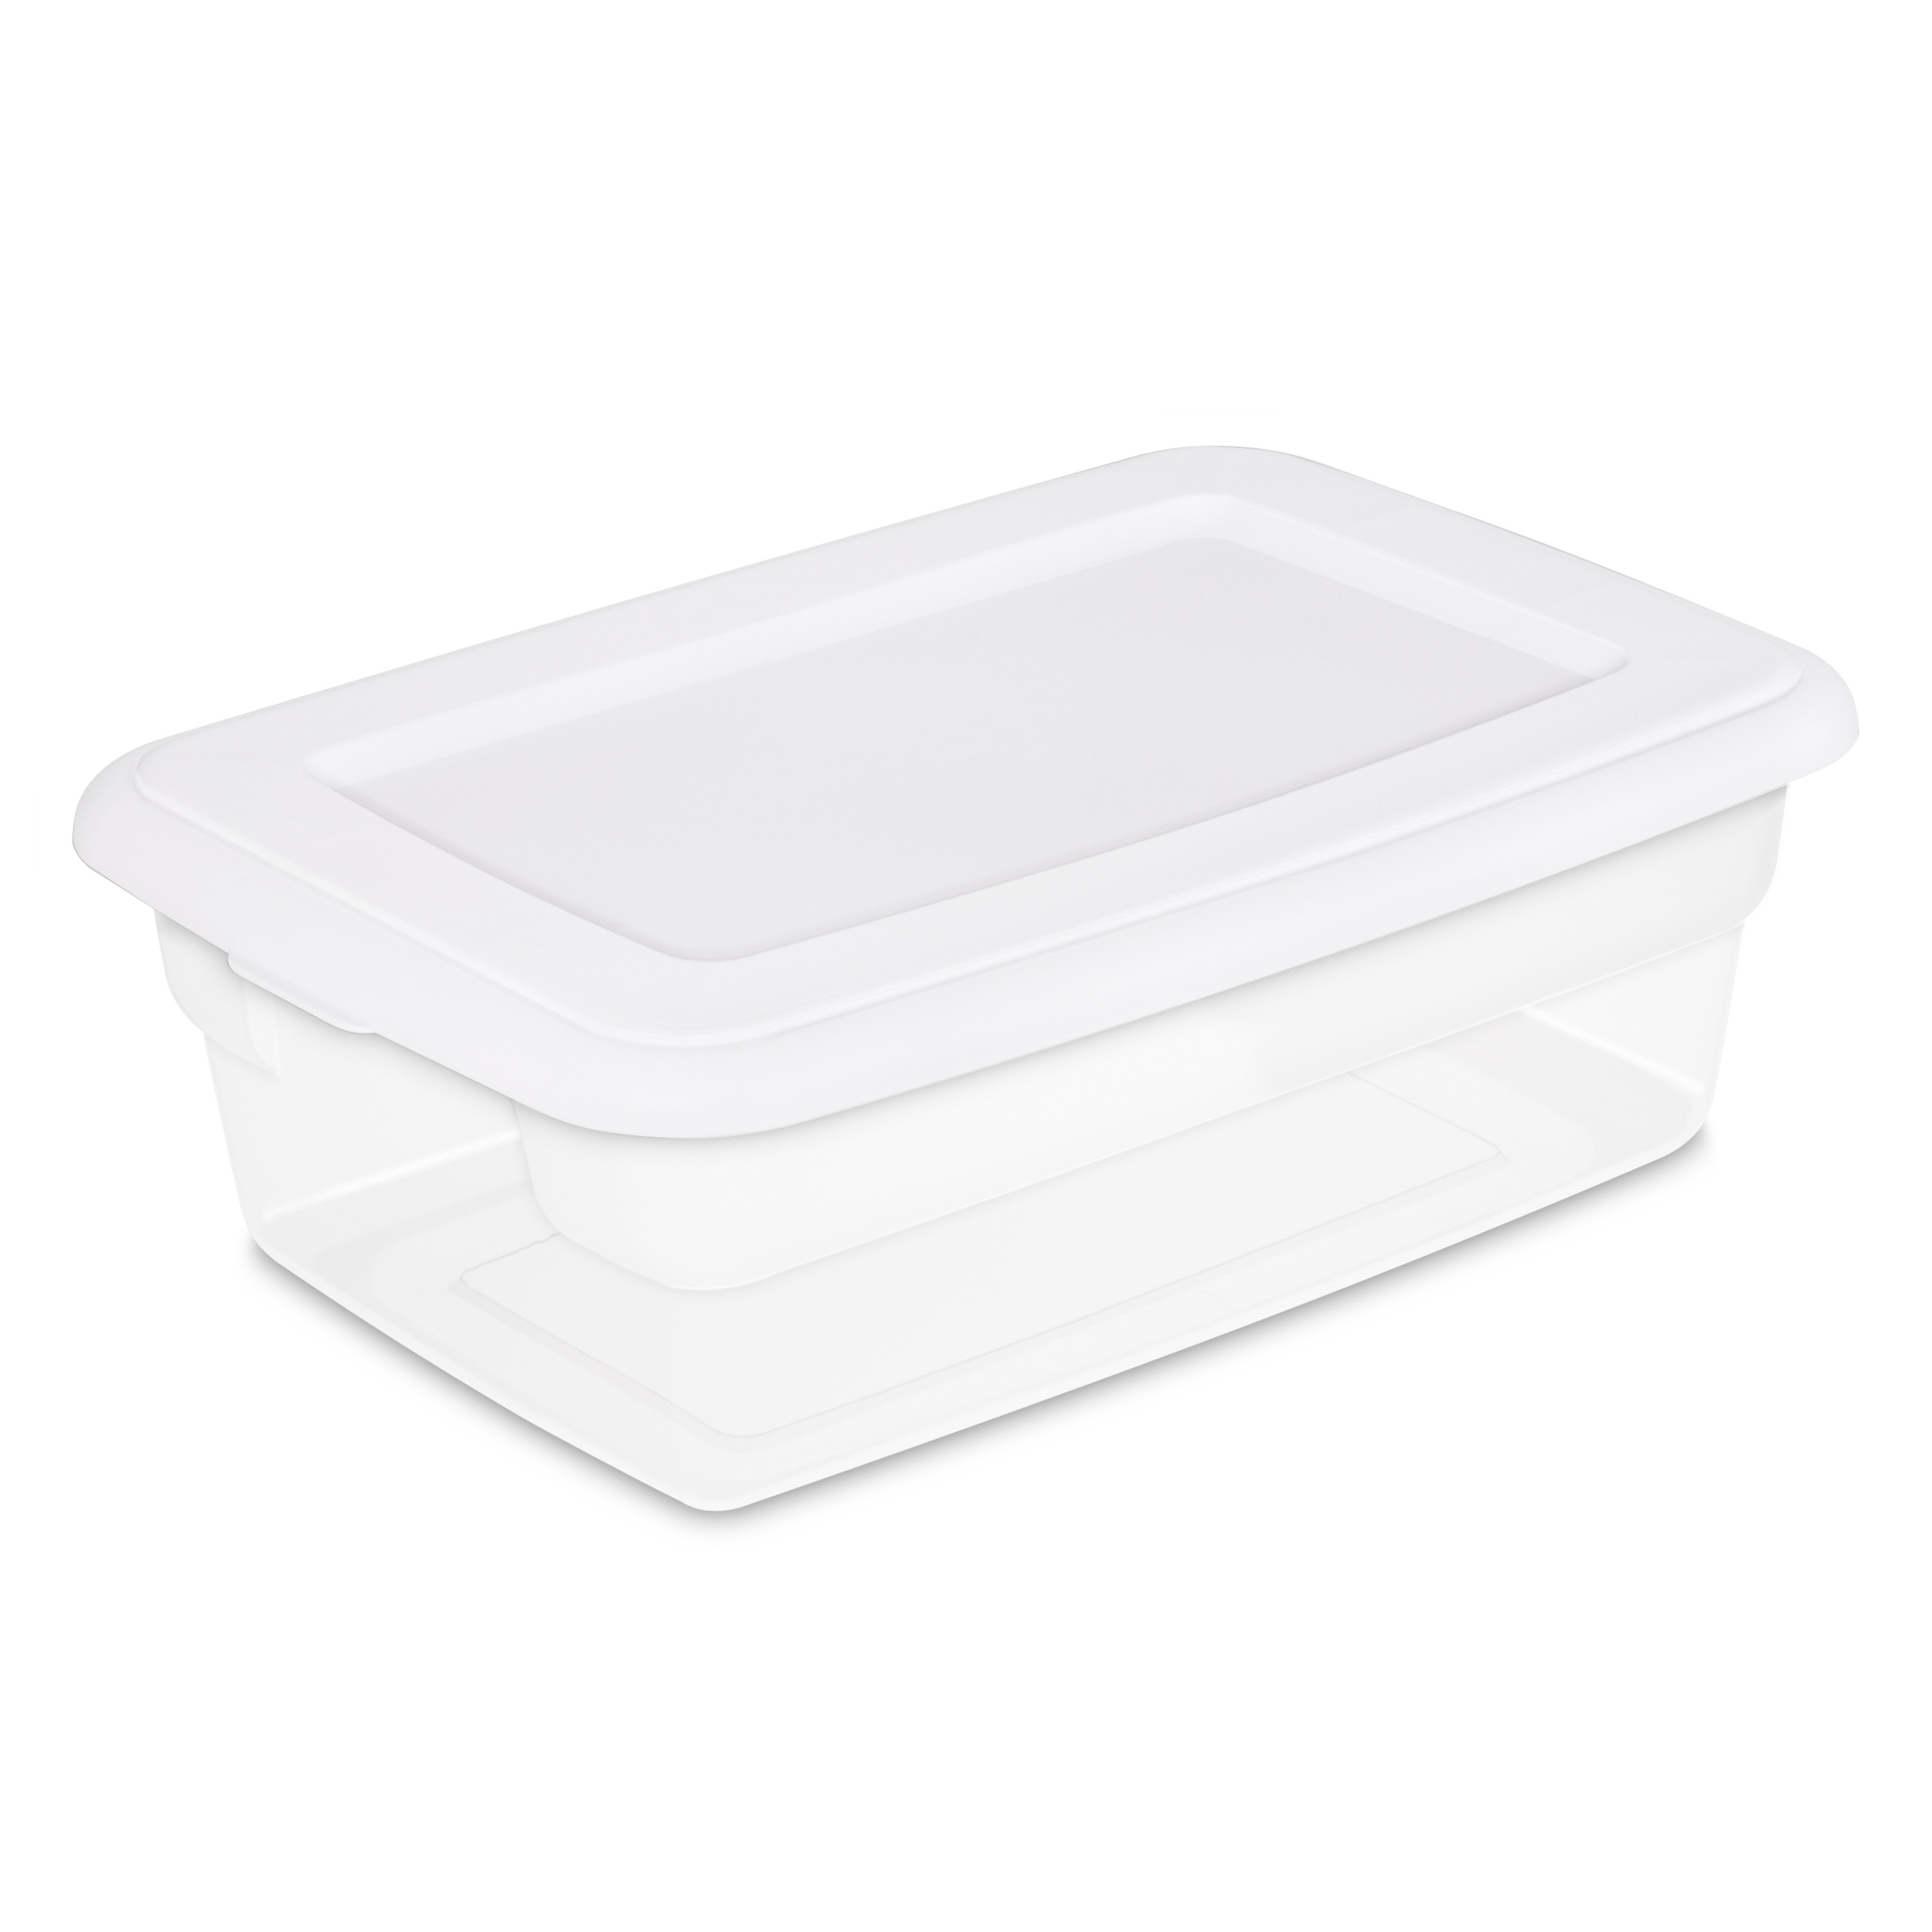 Sterilite 12 Qt. Storage Box Plastic, White - image 1 of 8